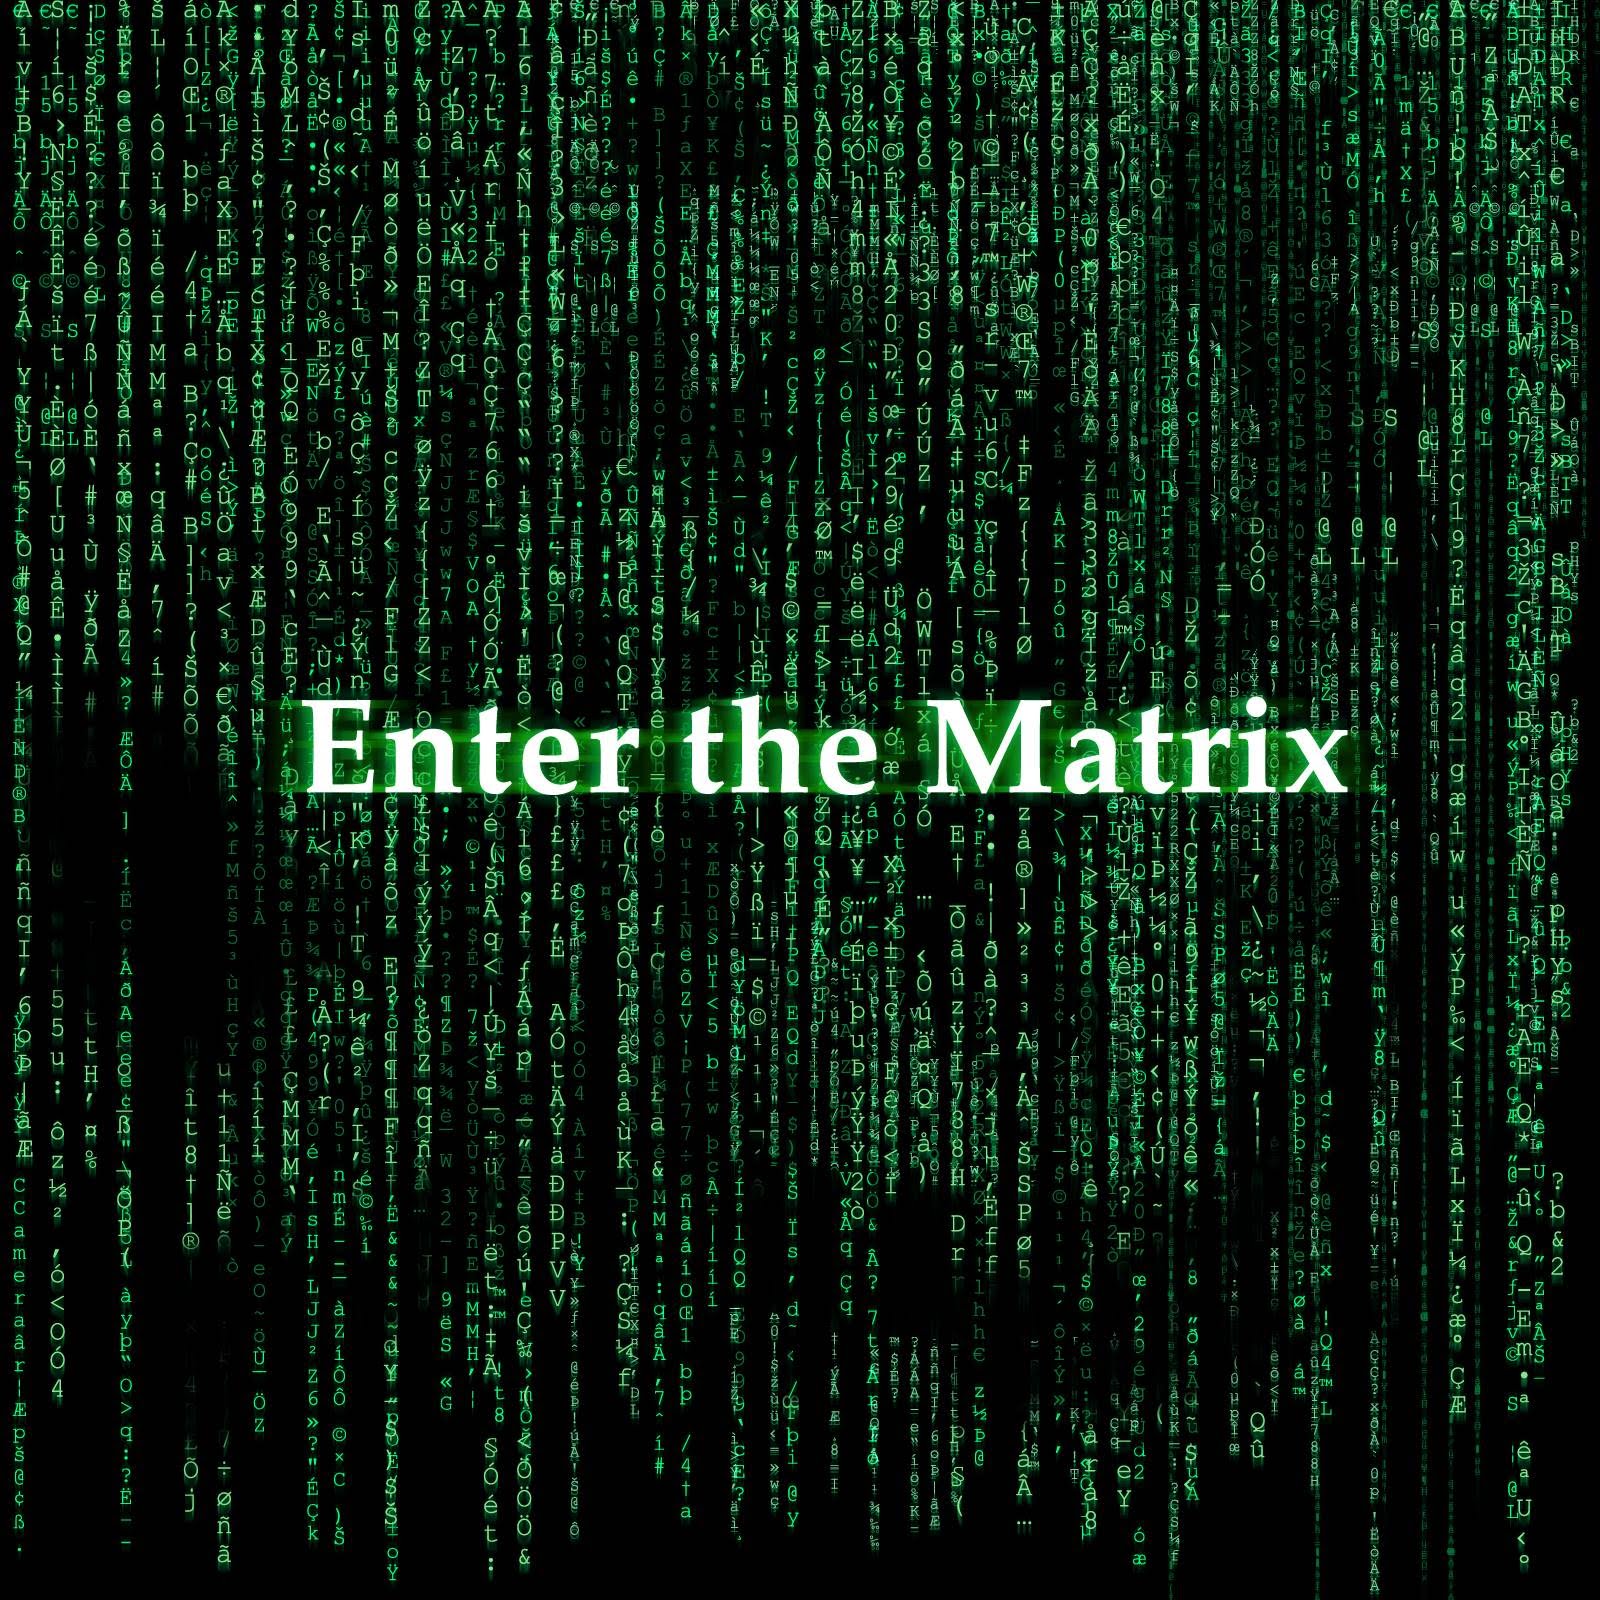 دانلود نسخه فشرده بازی Enter the Matrix با حجم 200 مگابایت